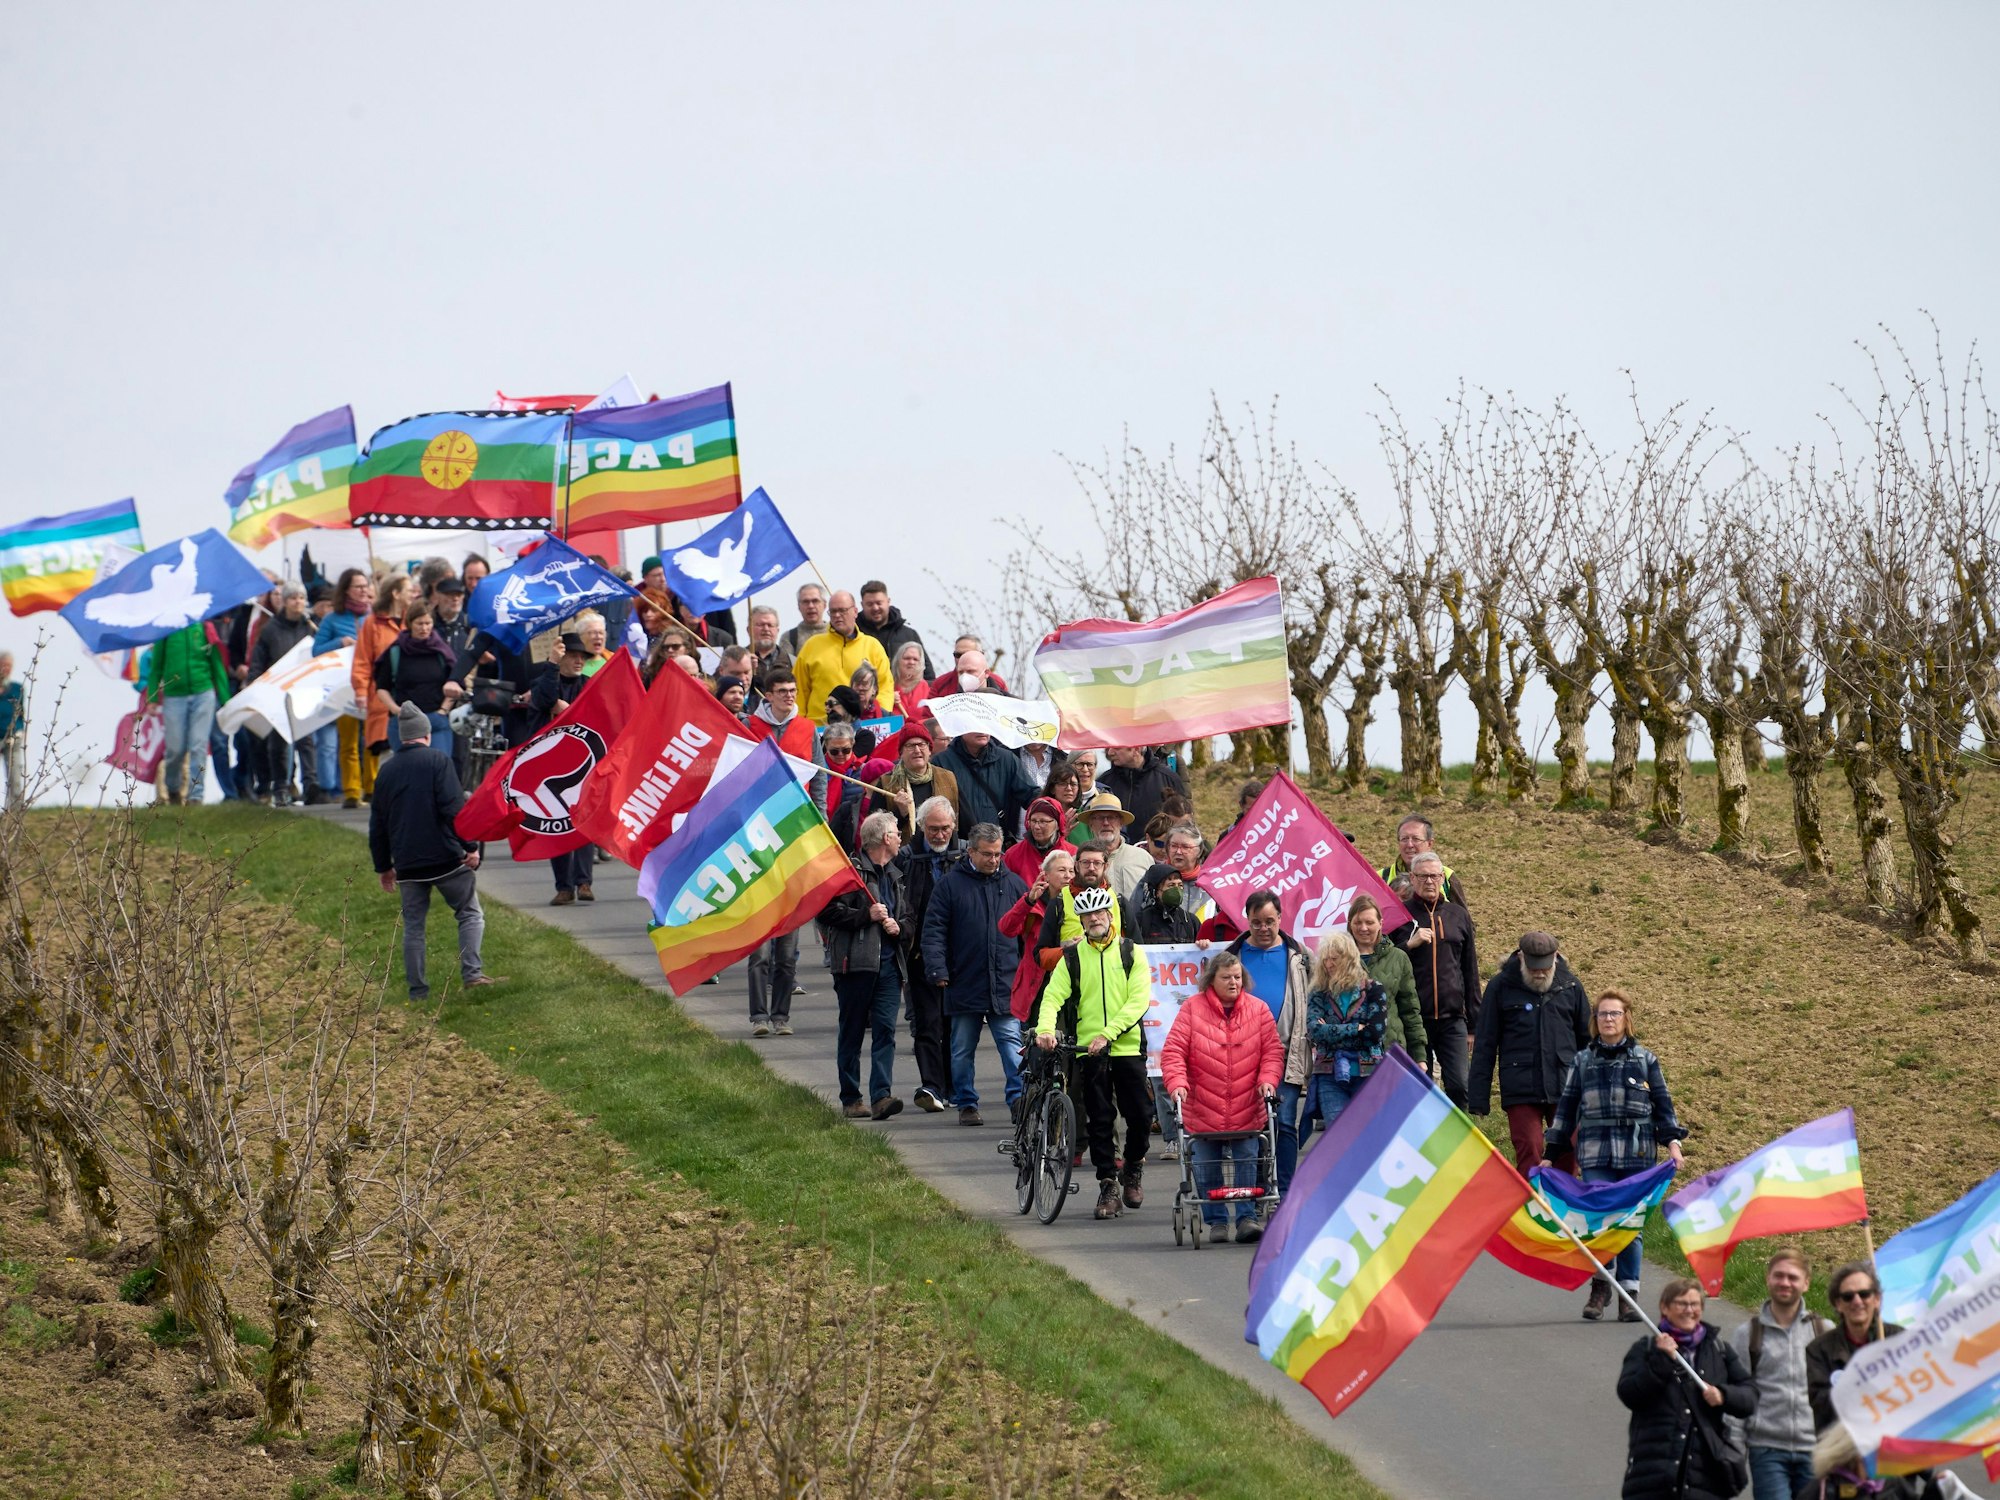 Teilnehmer des Ostermarsches laufen am Zaun des Bundeswehr-Fliegerhorsts mit bunten Flaggen vorbei.